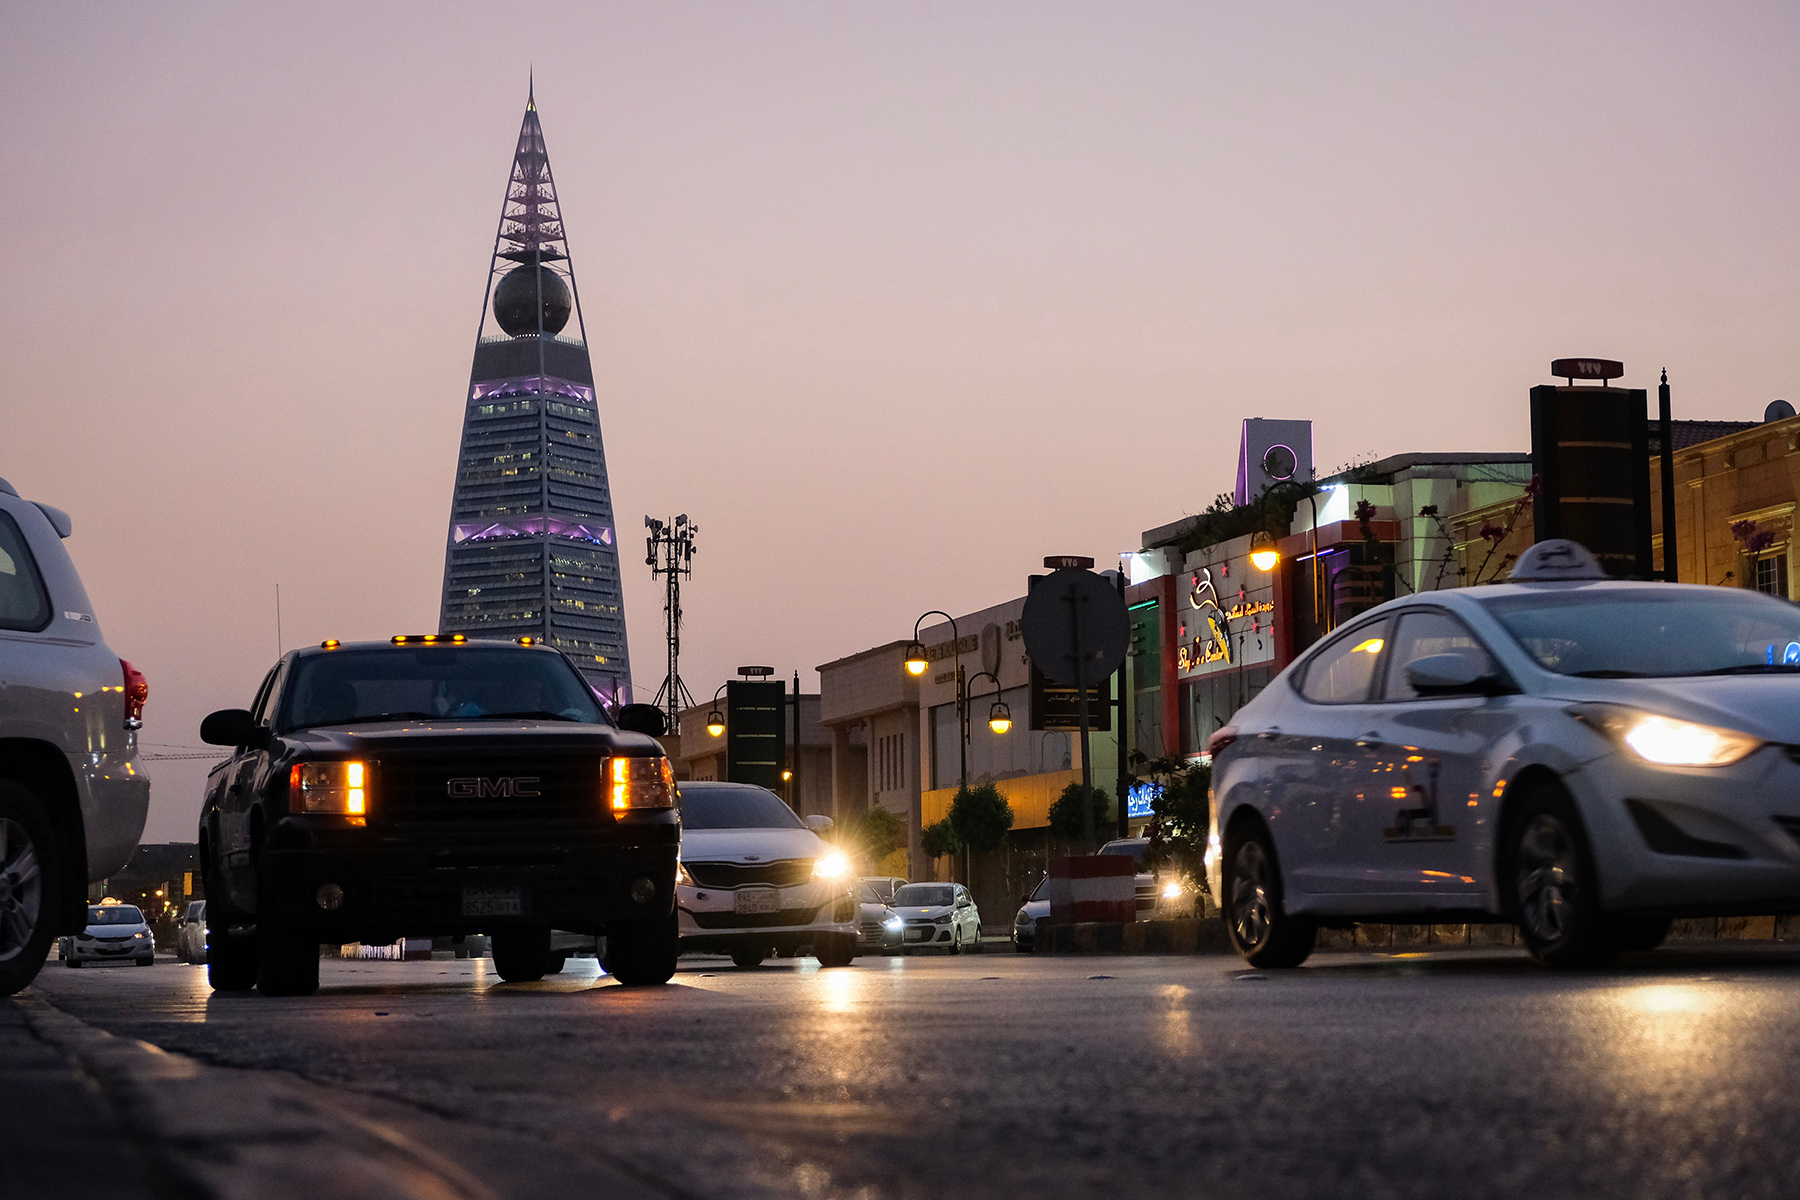 Rush hour traffic in Riyadh